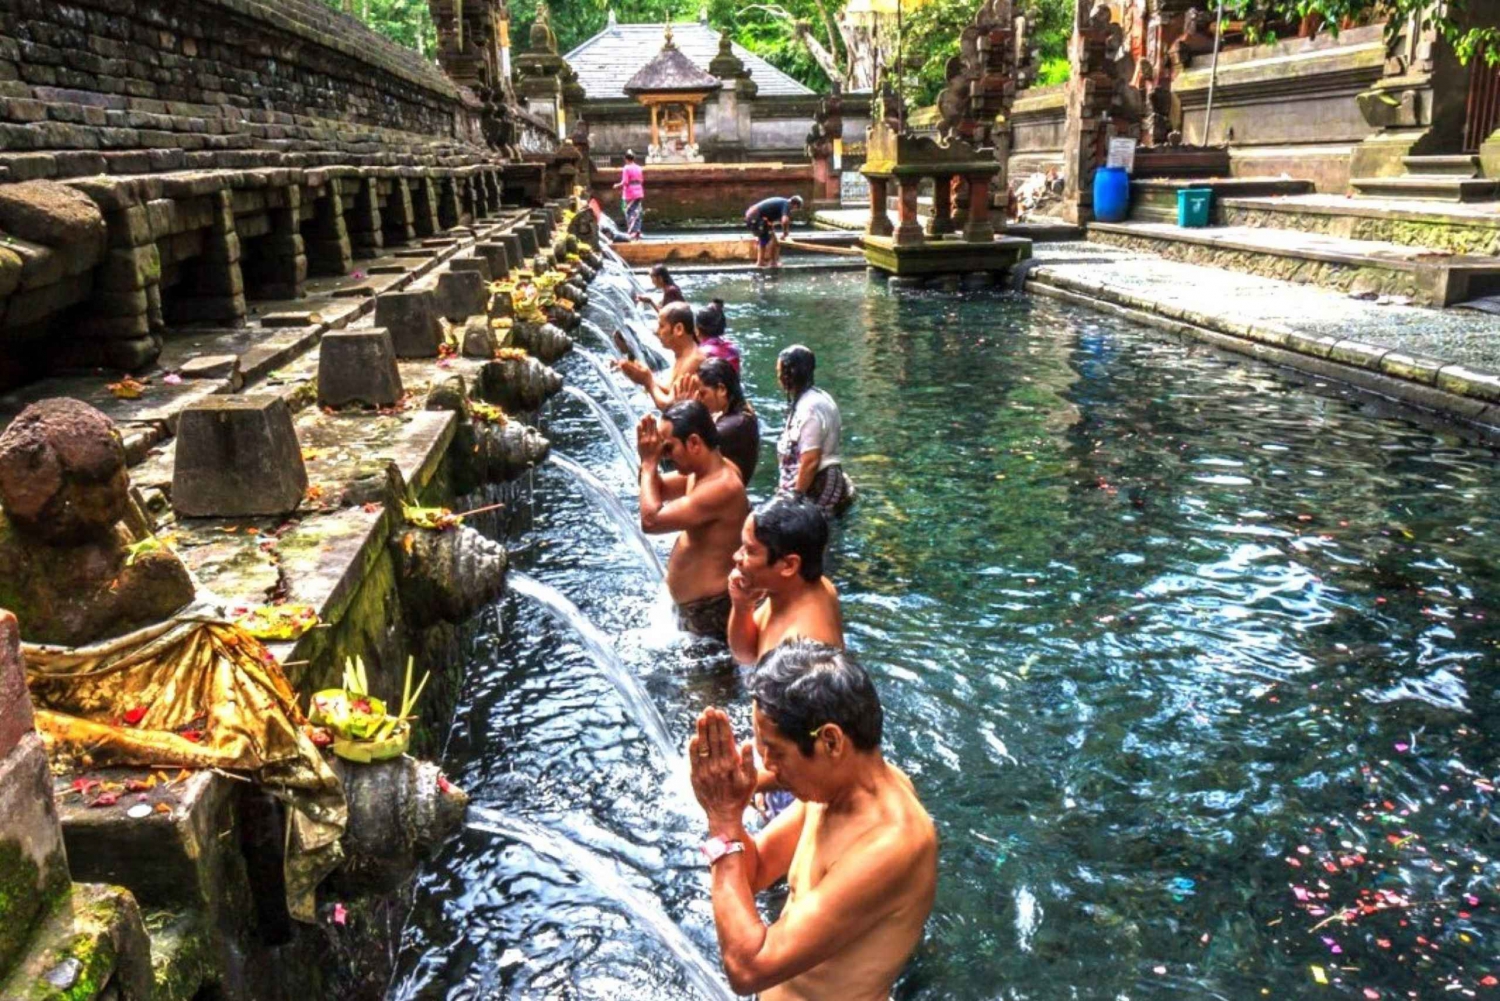 Cascada de Ubud, terraza de arroz de Tegalalang y templo de Tirta empul